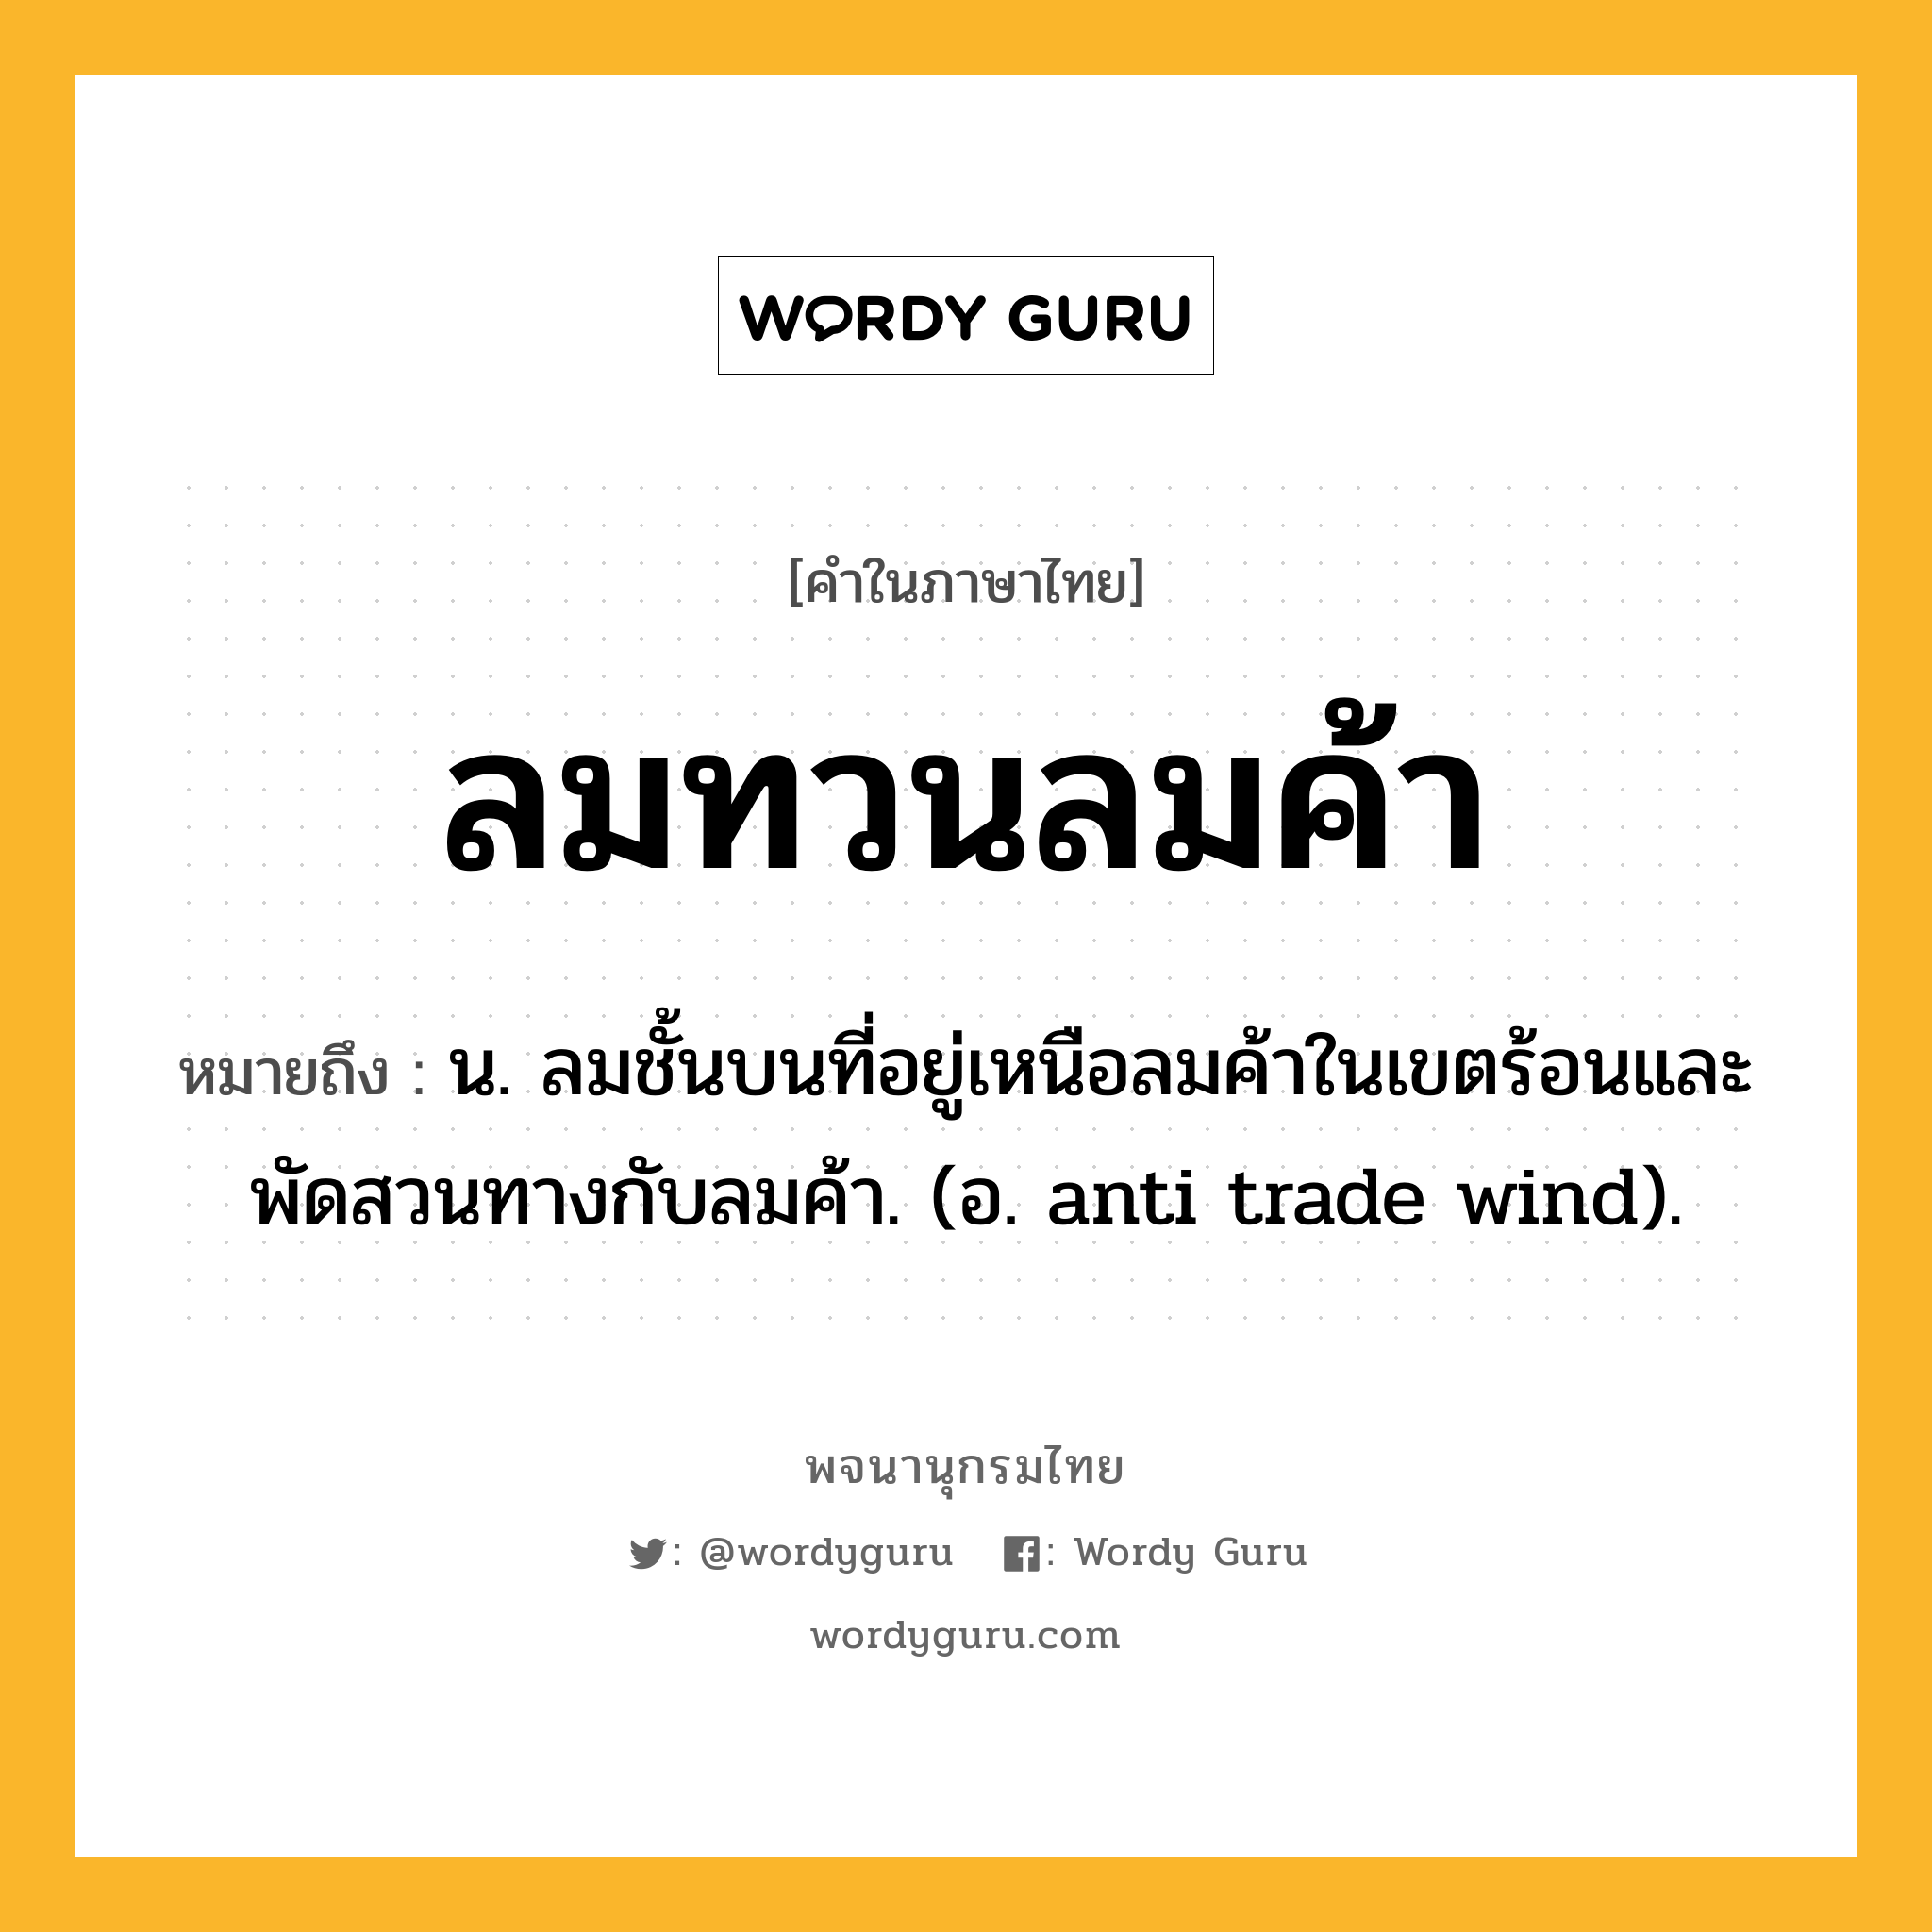 ลมทวนลมค้า หมายถึงอะไร?, คำในภาษาไทย ลมทวนลมค้า หมายถึง น. ลมชั้นบนที่อยู่เหนือลมค้าในเขตร้อนและพัดสวนทางกับลมค้า. (อ. anti trade wind).